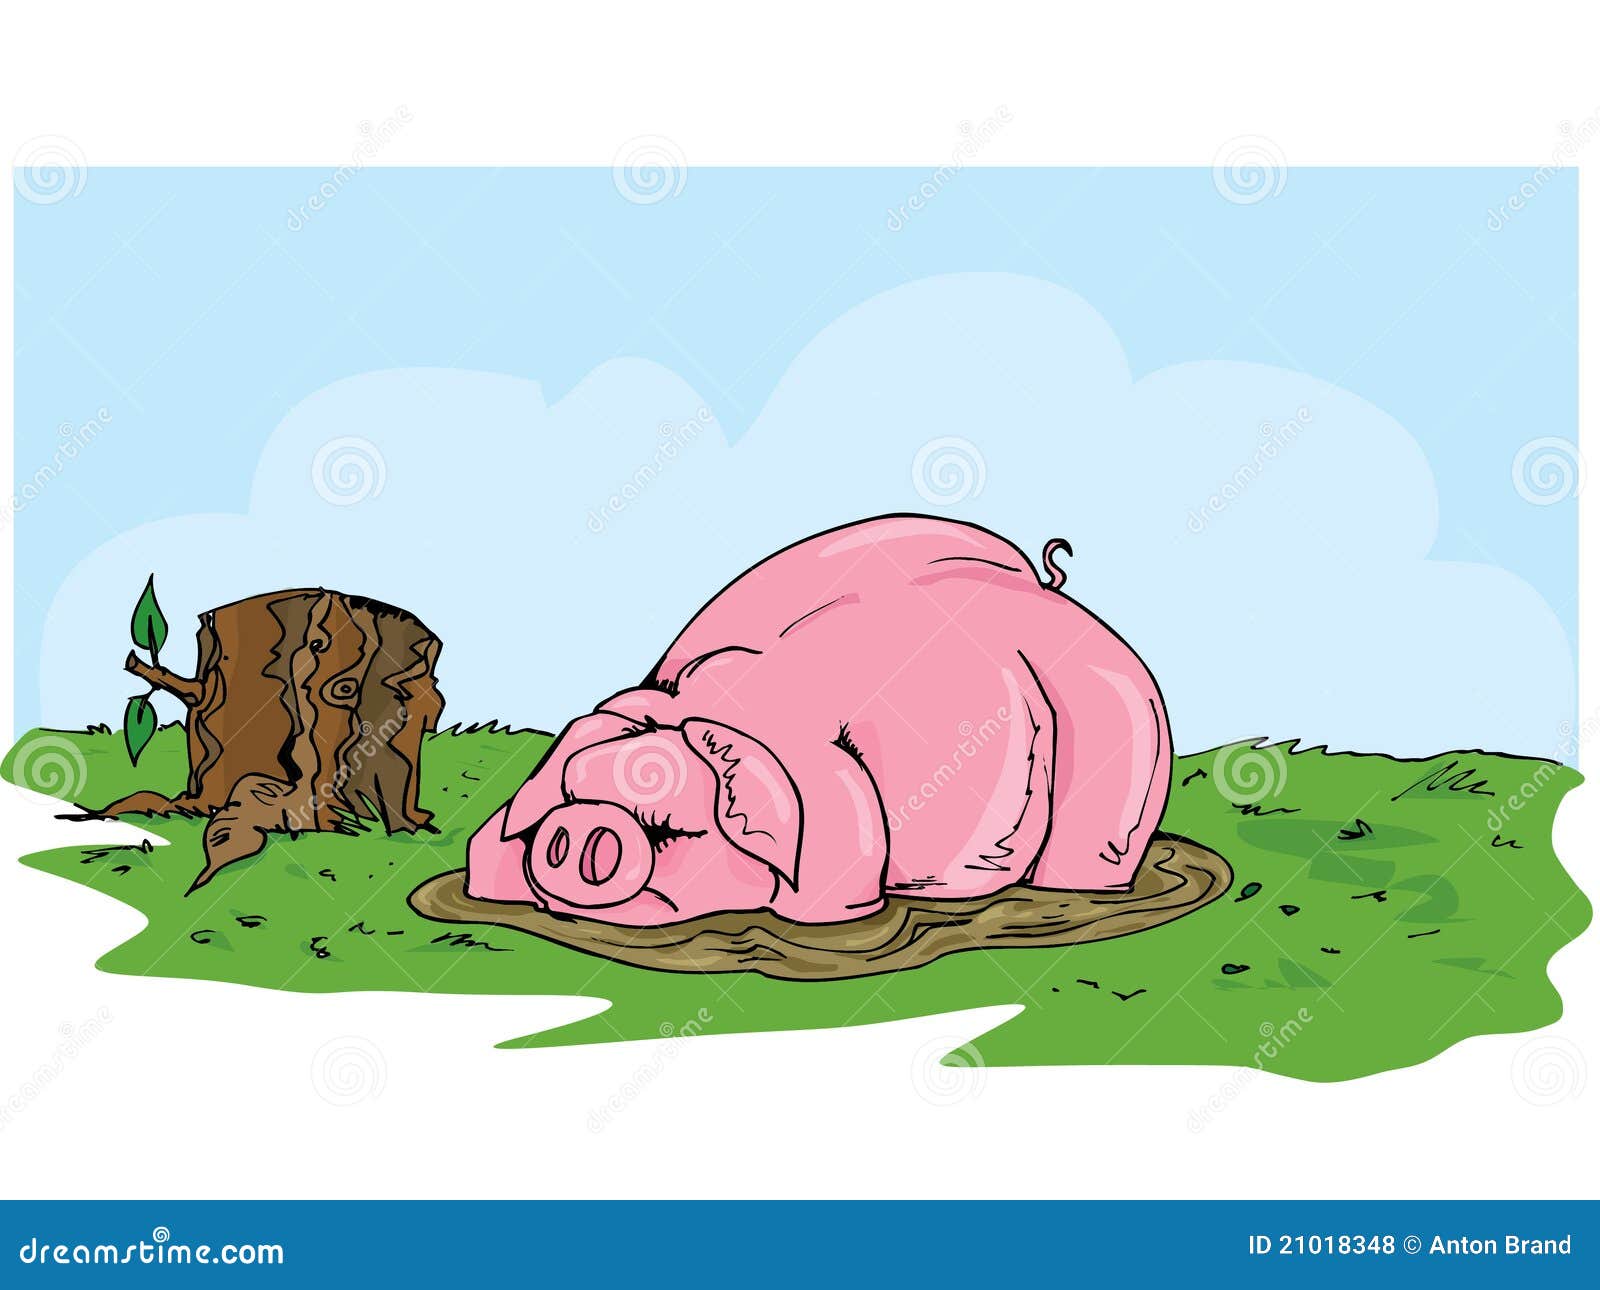 Зарекалась свинья. Свинья валяется в грязи. Хрюшка в грязи иллюстрации. Свинья в грязи карикатура.